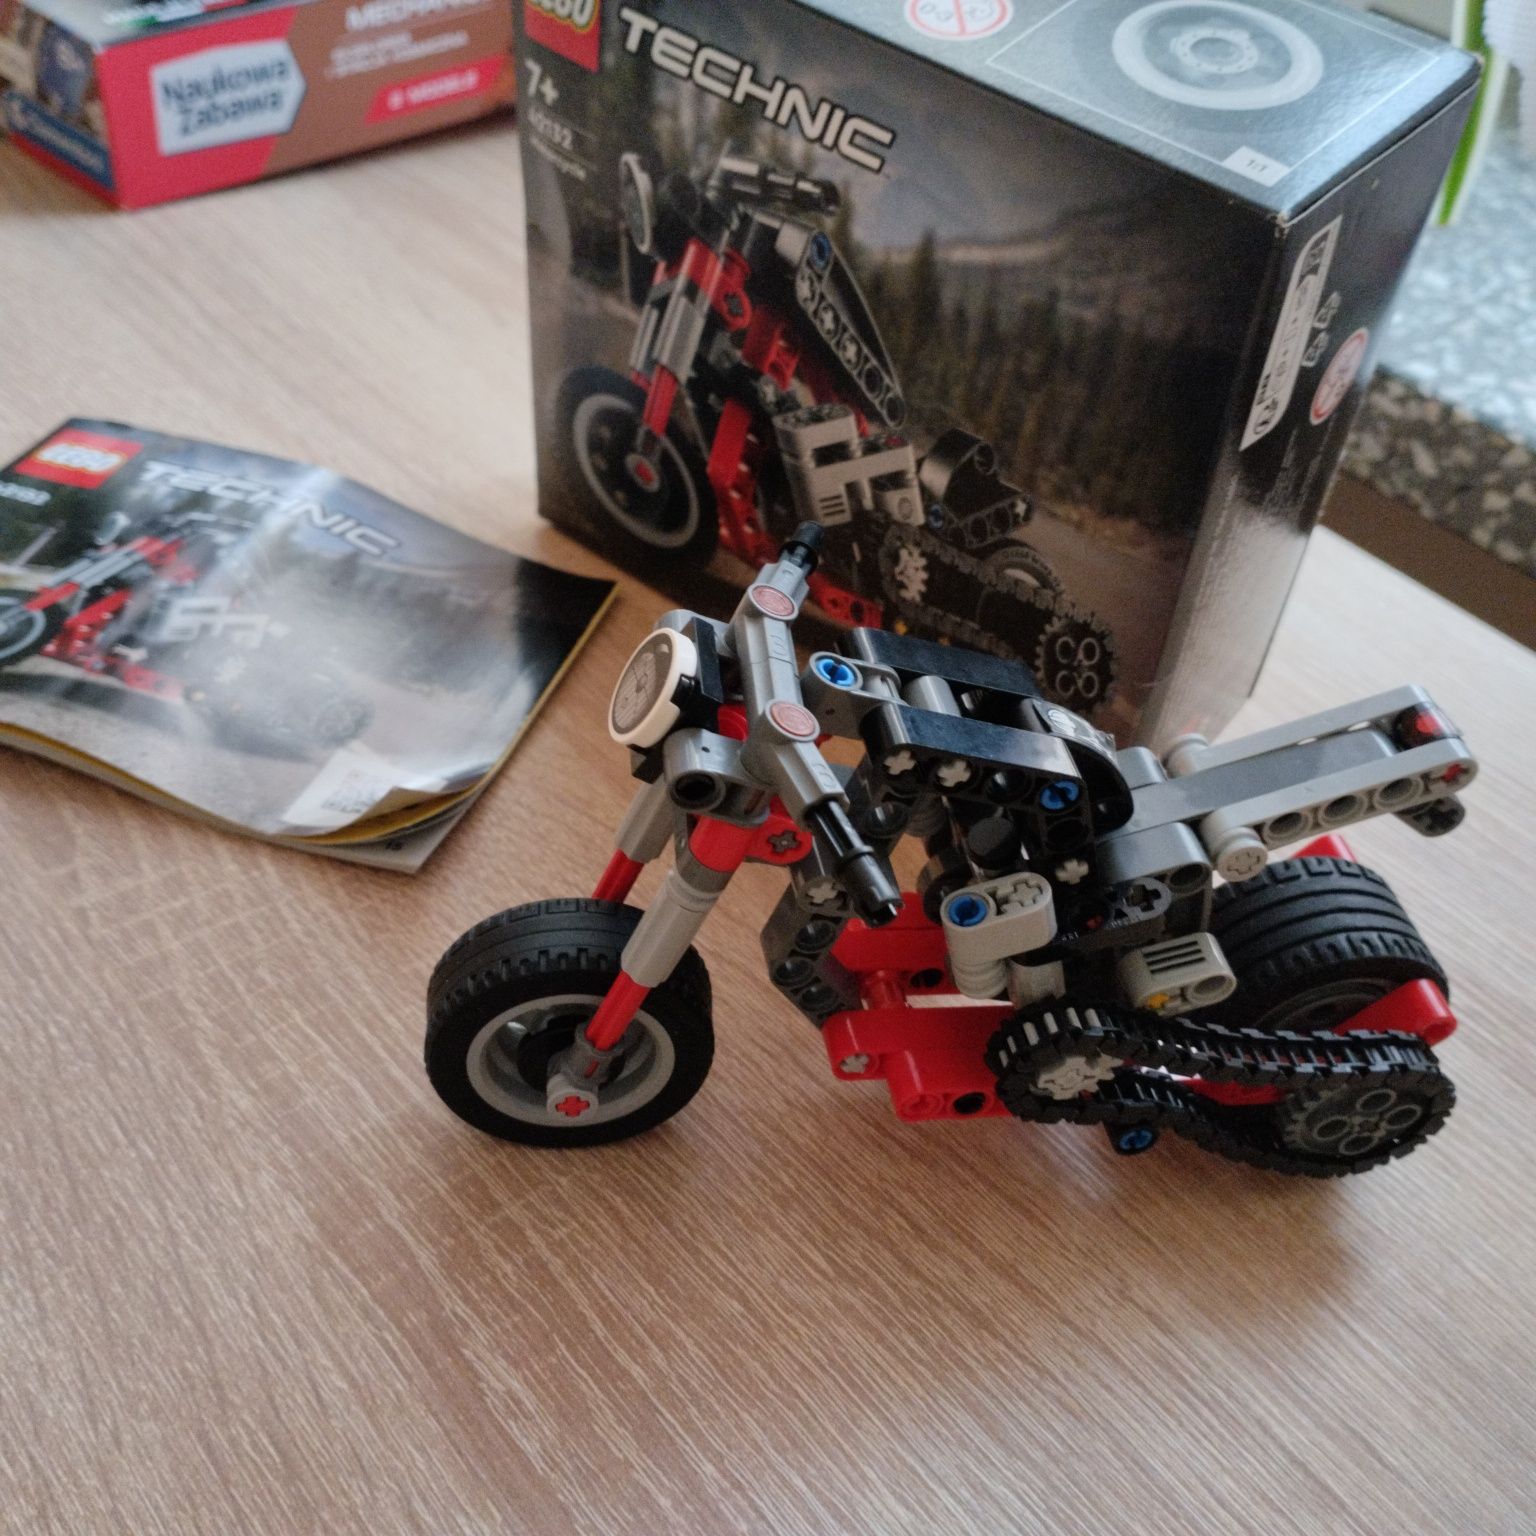 Lego Technic Motocyk 2w1 -  42132 - Leho Technic - Motocykl